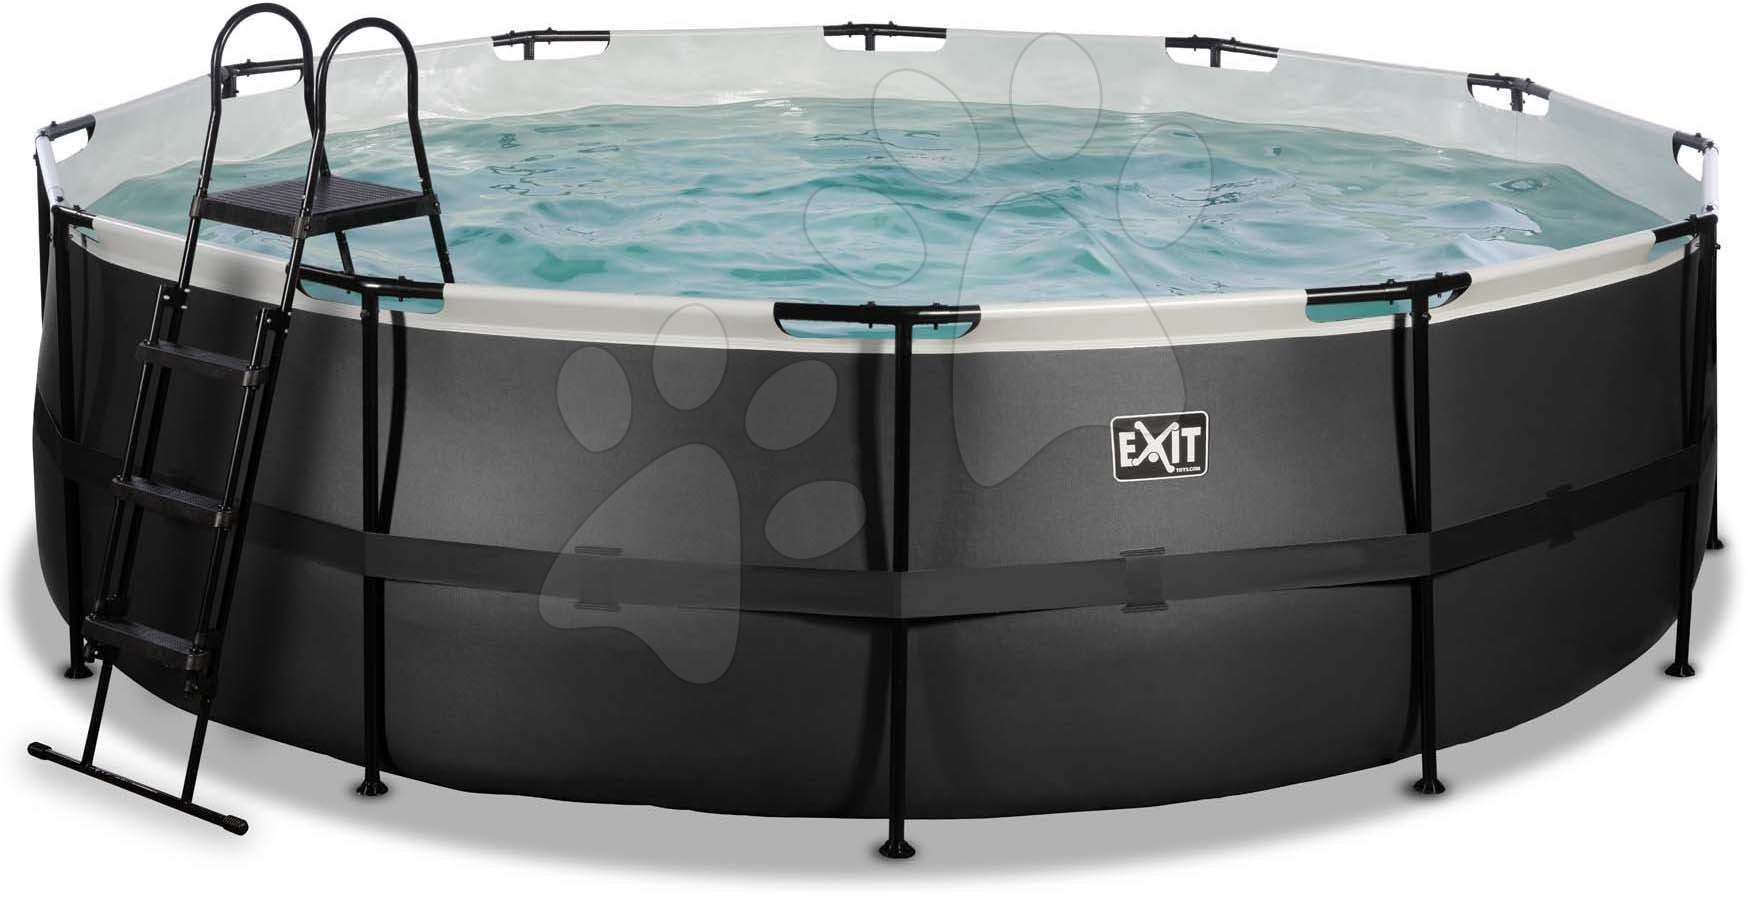 Medence homokszűrős vízforgatóval Black Leather pool Exit Toys kerek acél medencekeret 488*122 cm fekete 6 évtől